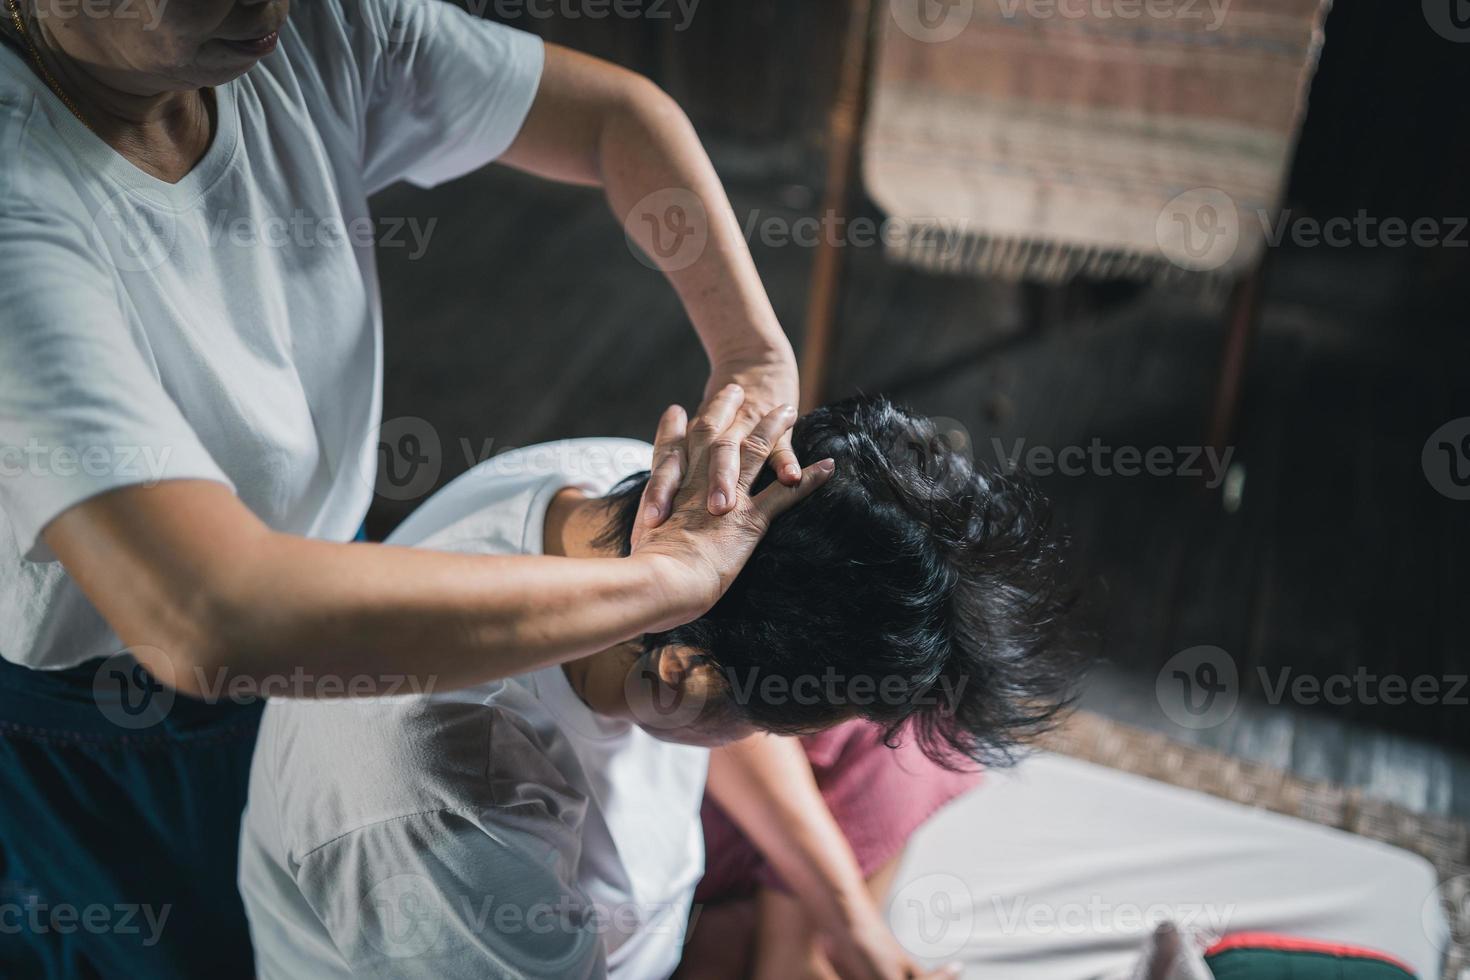 massagem e spa tratamento relaxante da síndrome do escritório estilo tradicional de massagem tailandesa. asain massagista feminina sênior fazendo massagem trata a cabeça, dor nas costas, dor no braço, pé e estresse para a velha cansada. foto